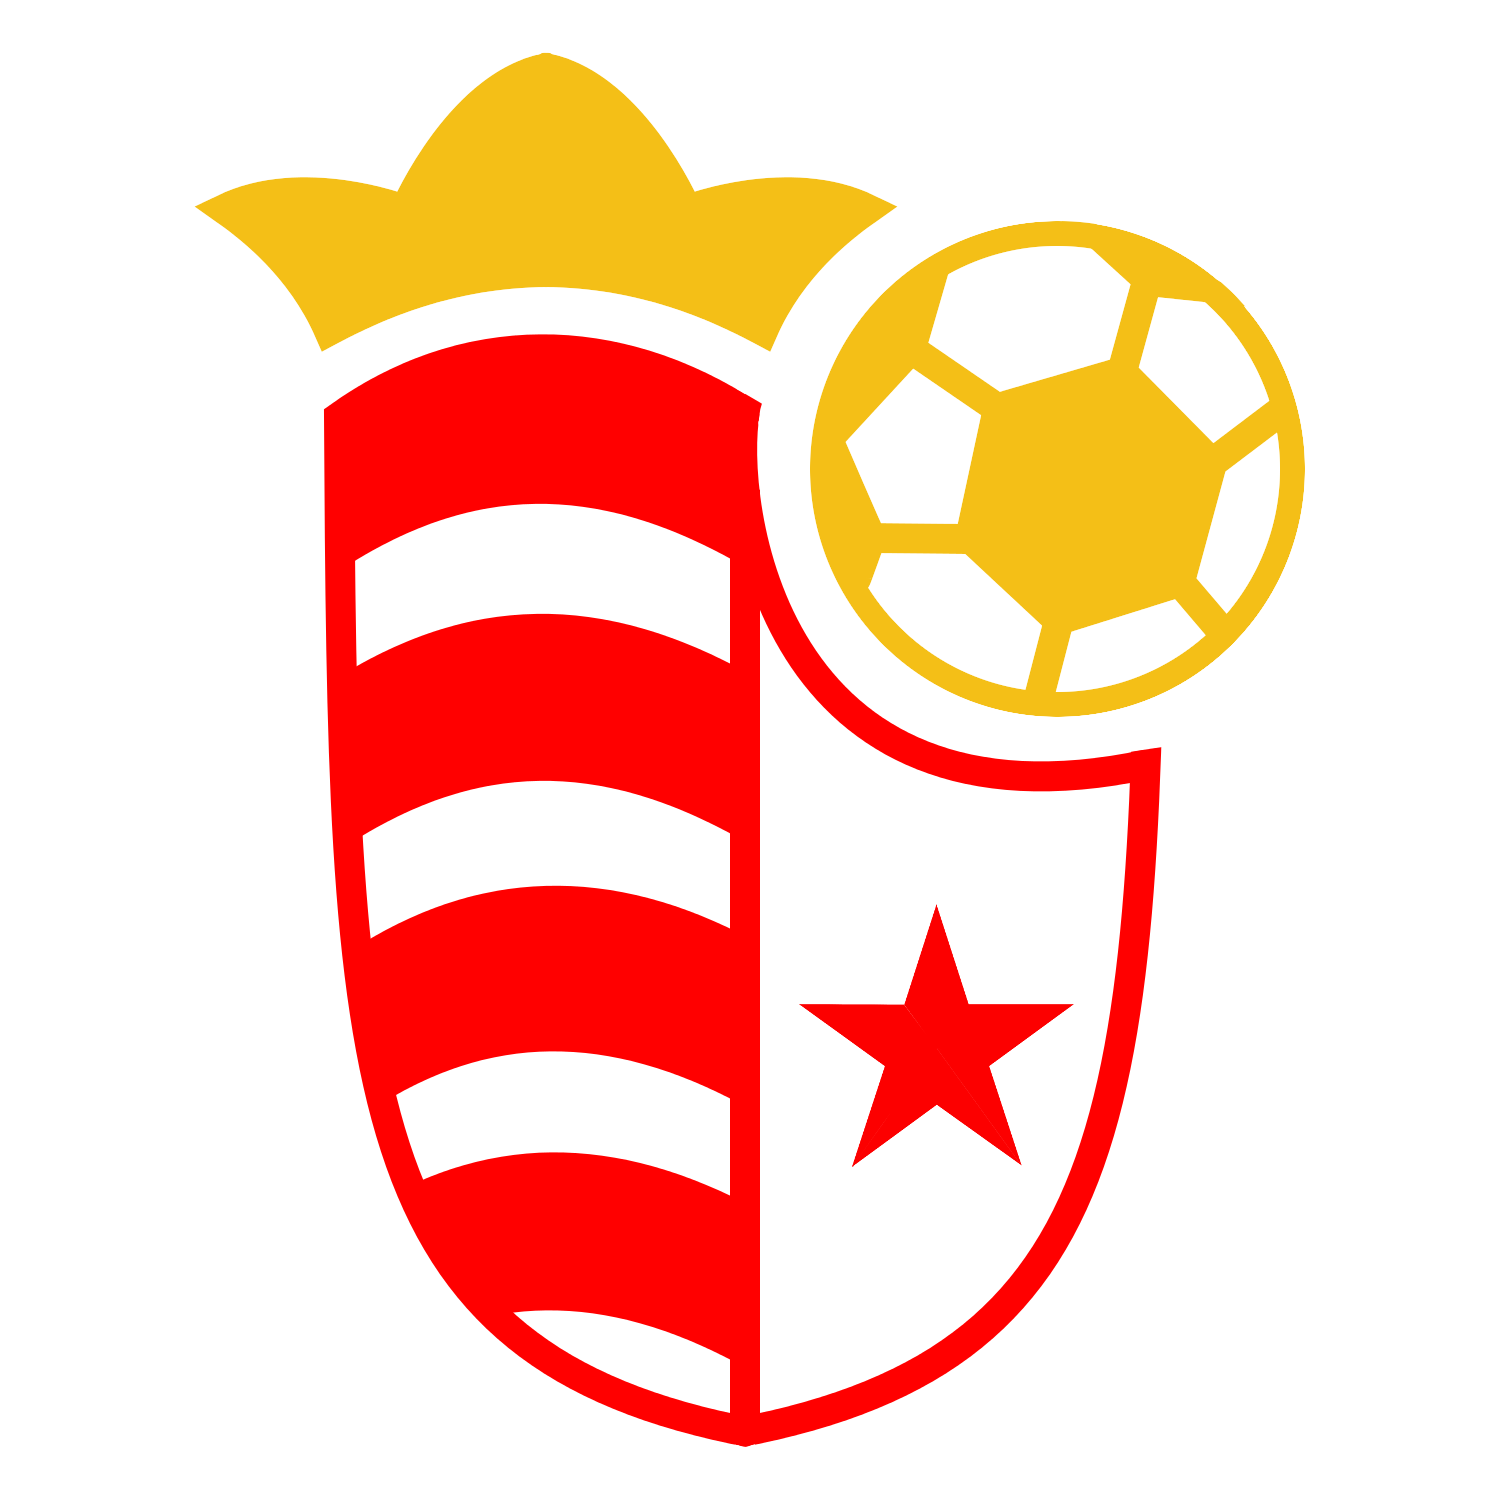 SK Slavia Praha Logo/Crest Redesign Color